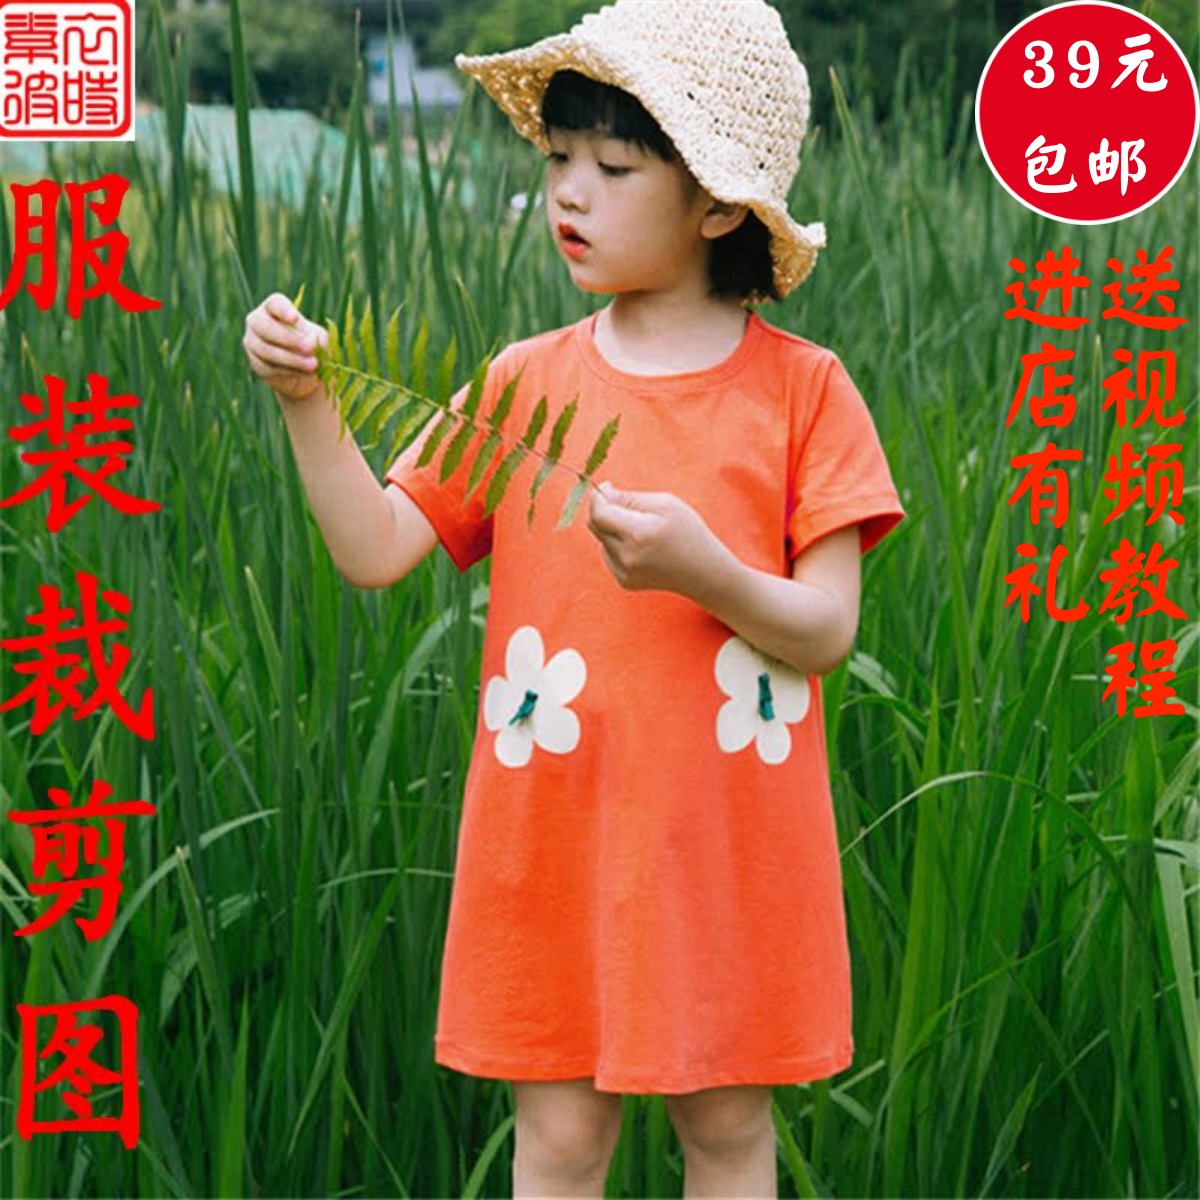 素-女童夏装长T恤diy服装1:1裁剪图 diy中小儿童短袖连衣裙纸样板